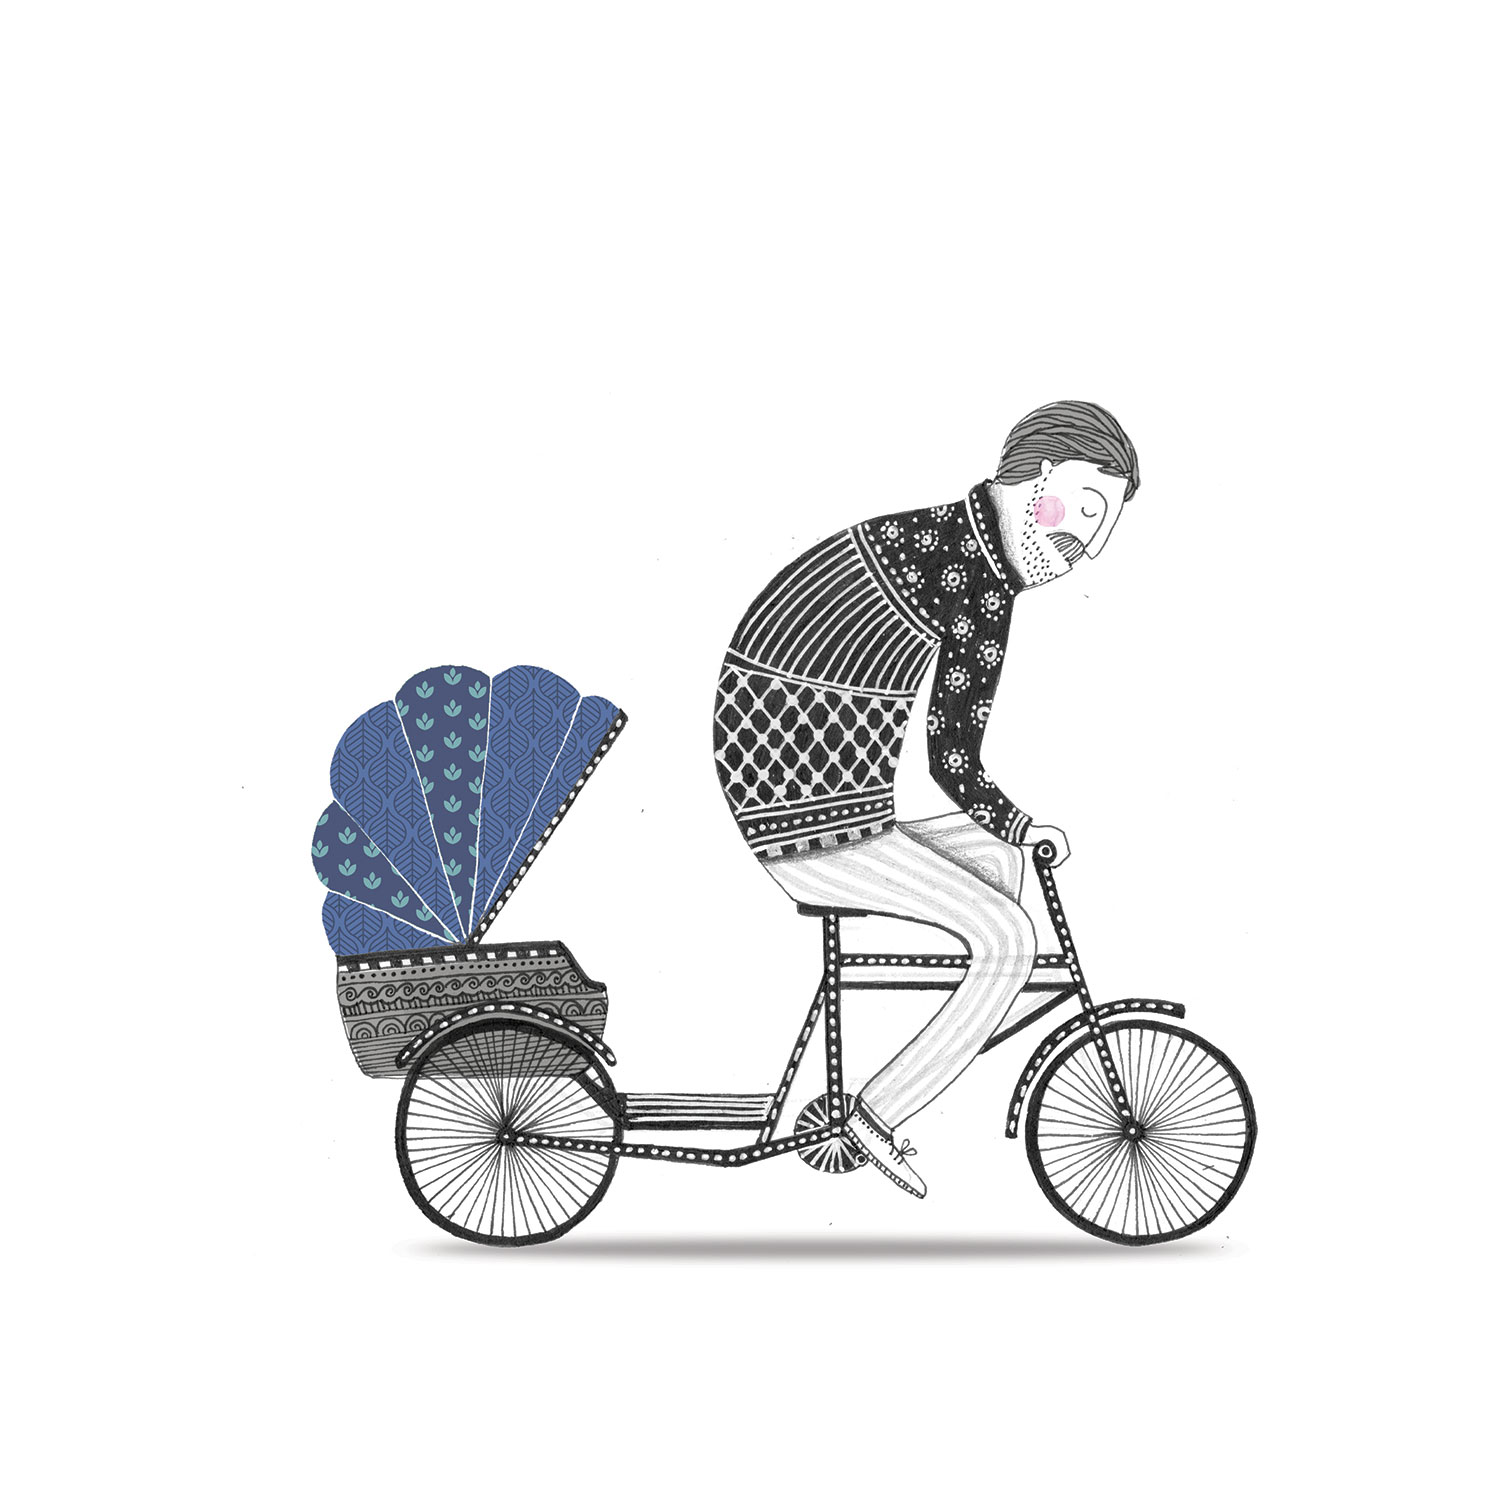 CycleRickshaw-2016.jpg